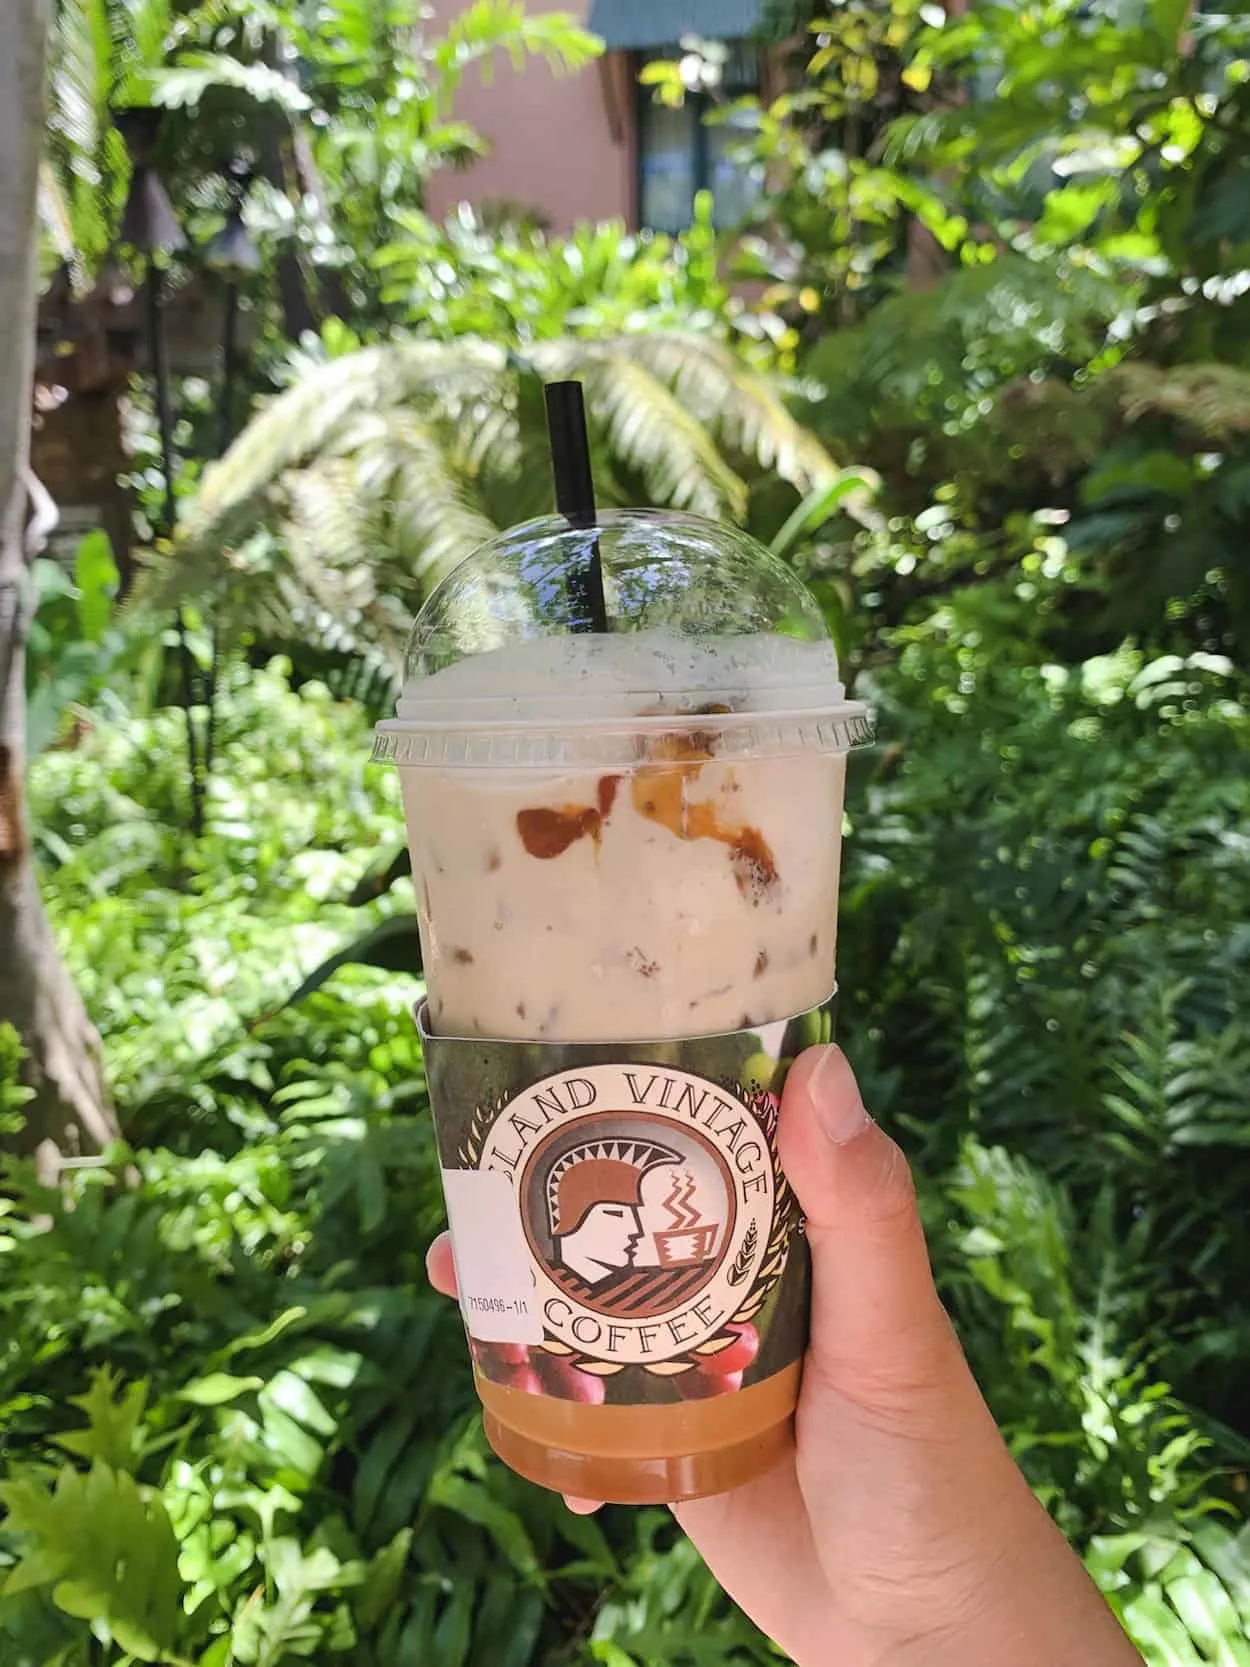 Island Vintage Coffee in Waikiki, Oahu, Hawaii